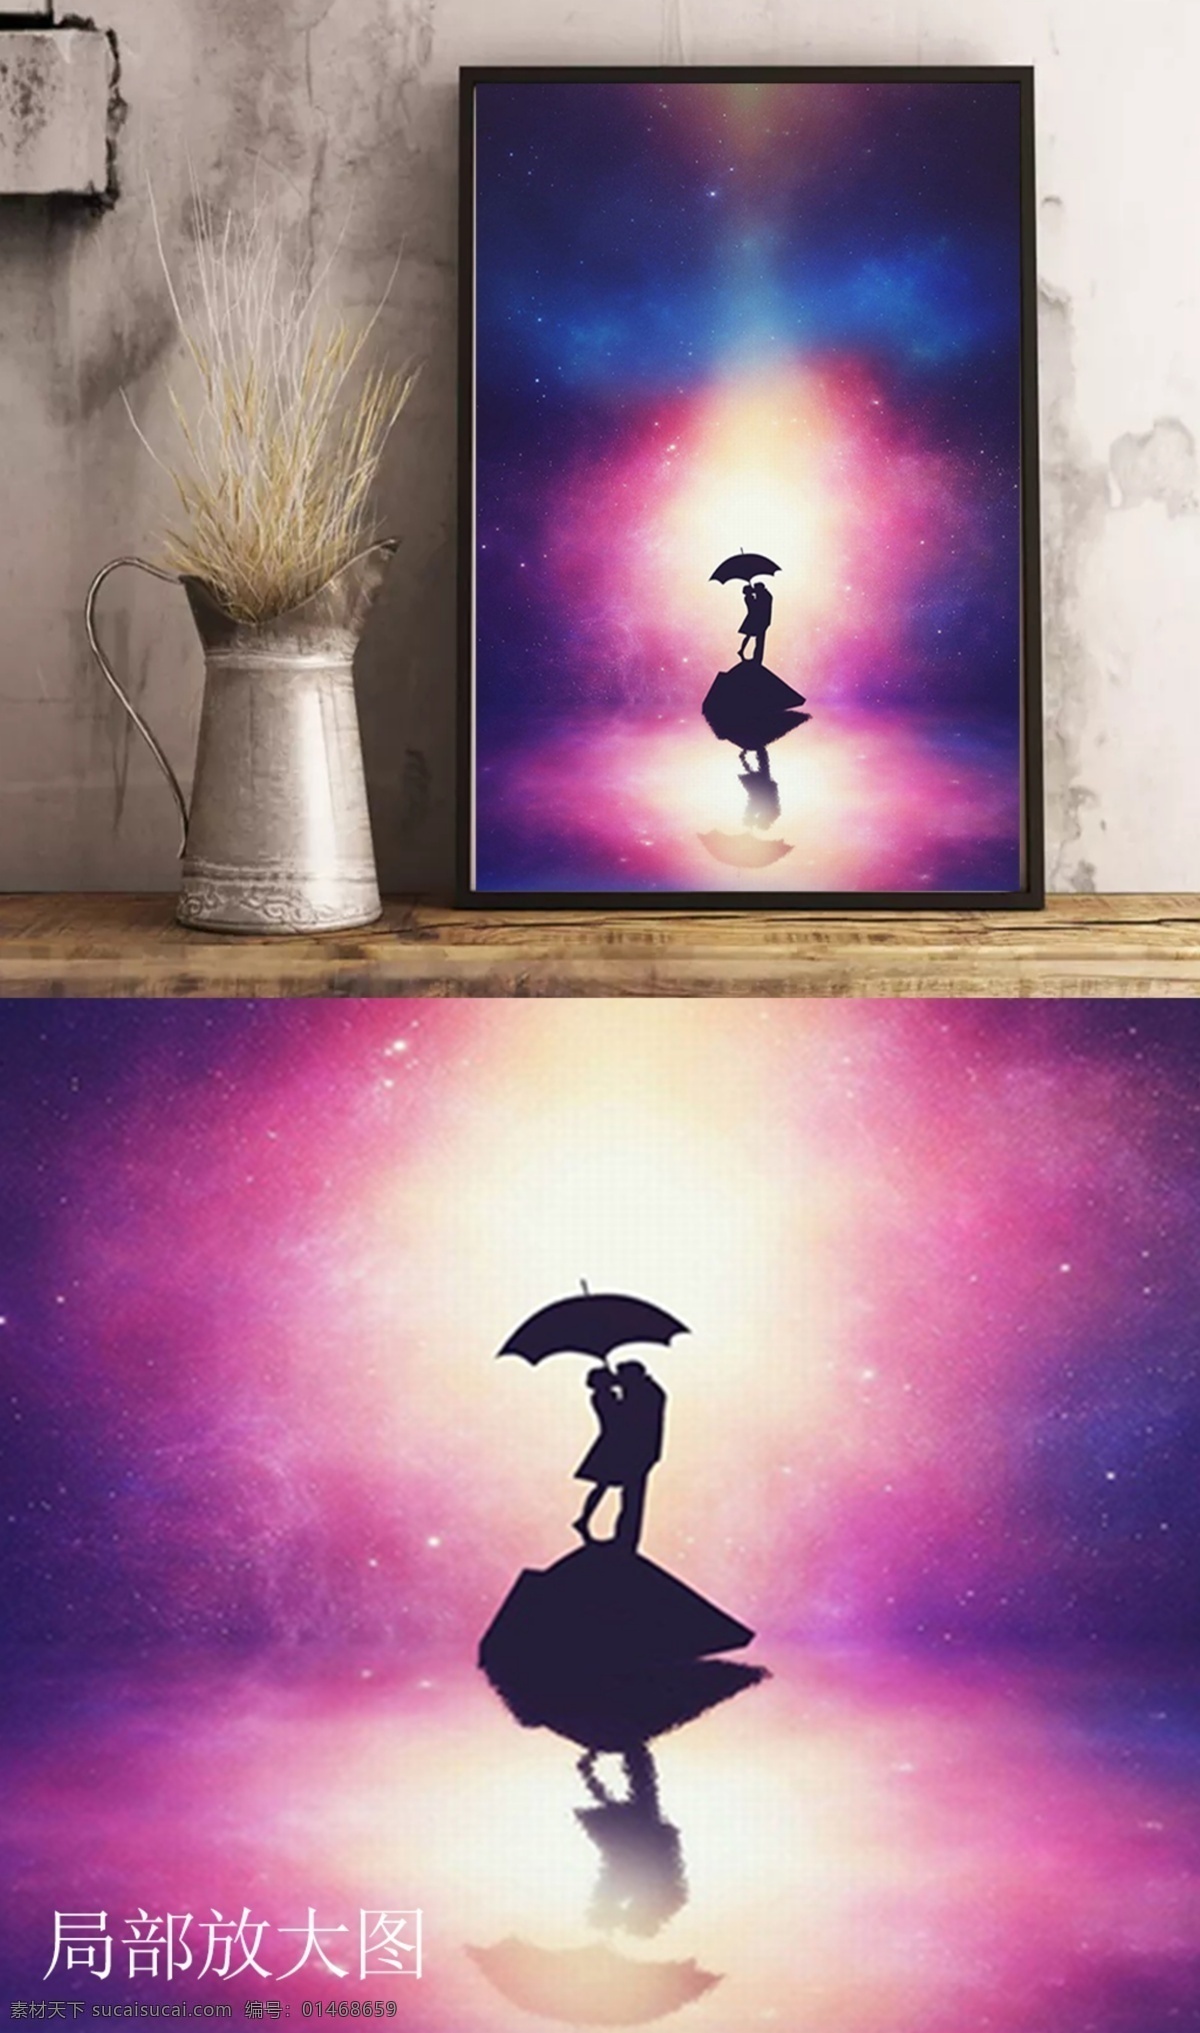 竖 图 梦幻 紫色 双人 爱情 客厅 装饰画 竖图